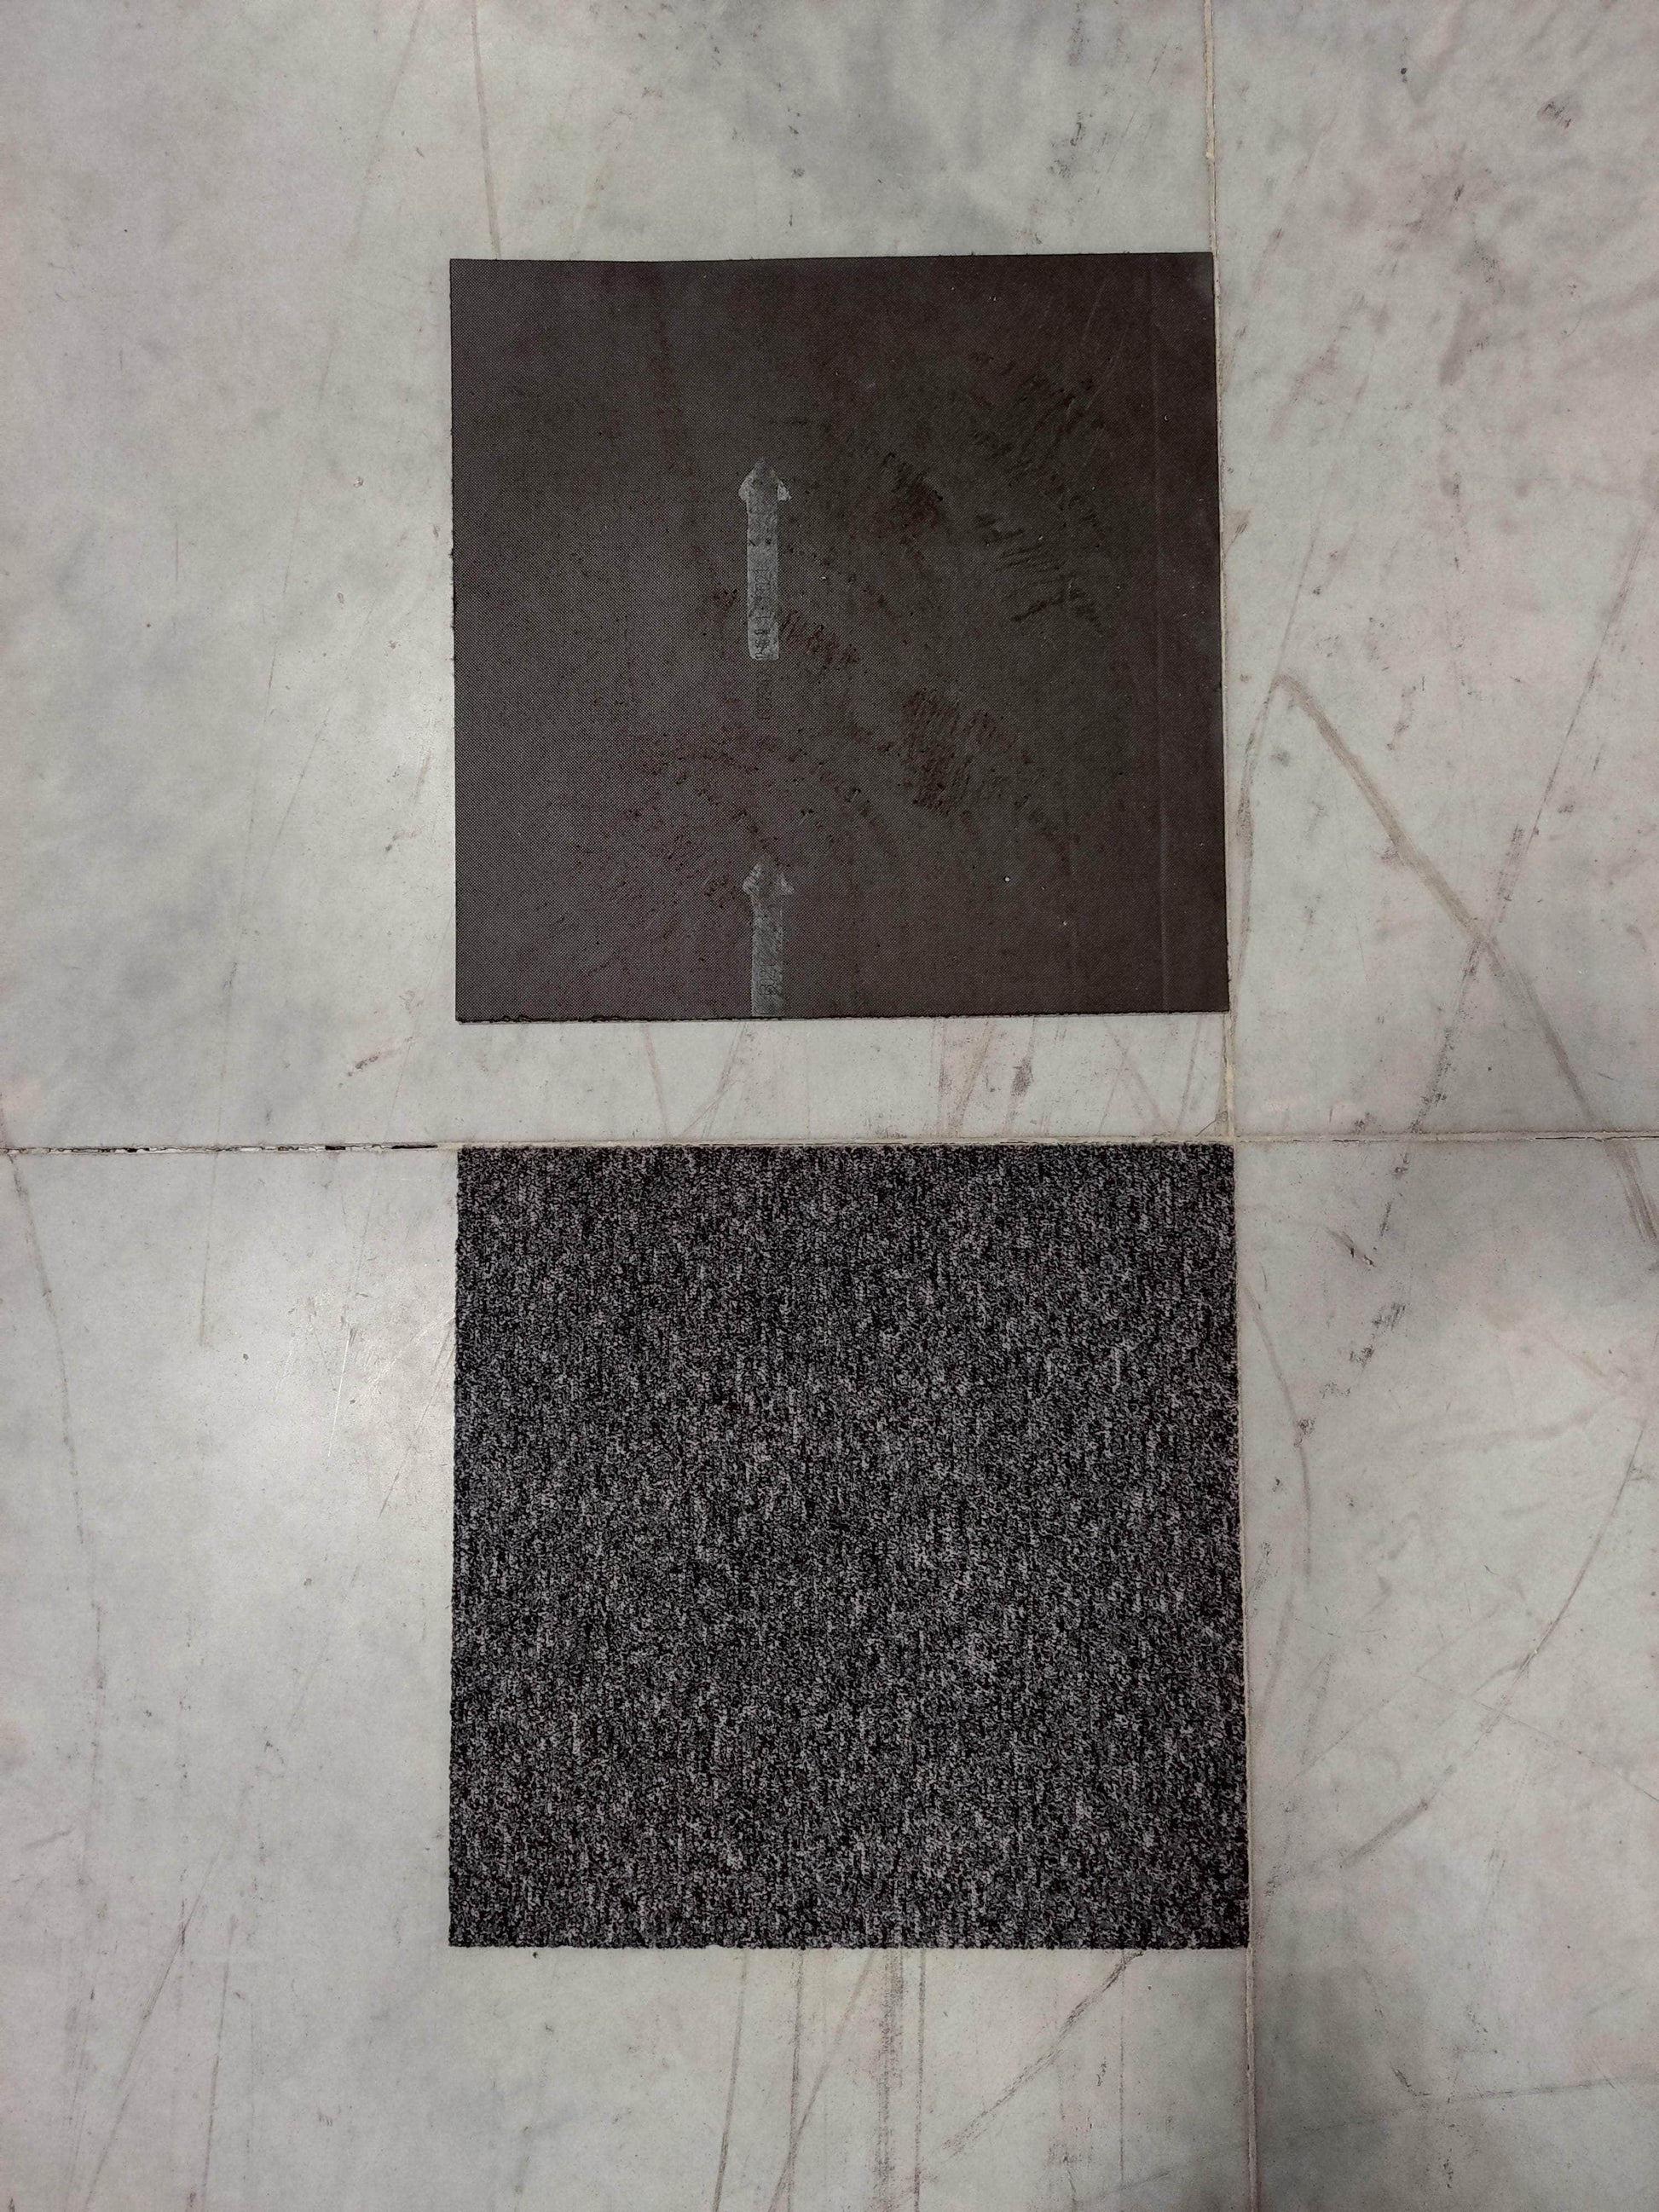 Dalle moquette,gris anthracite, 50 x 50 cm